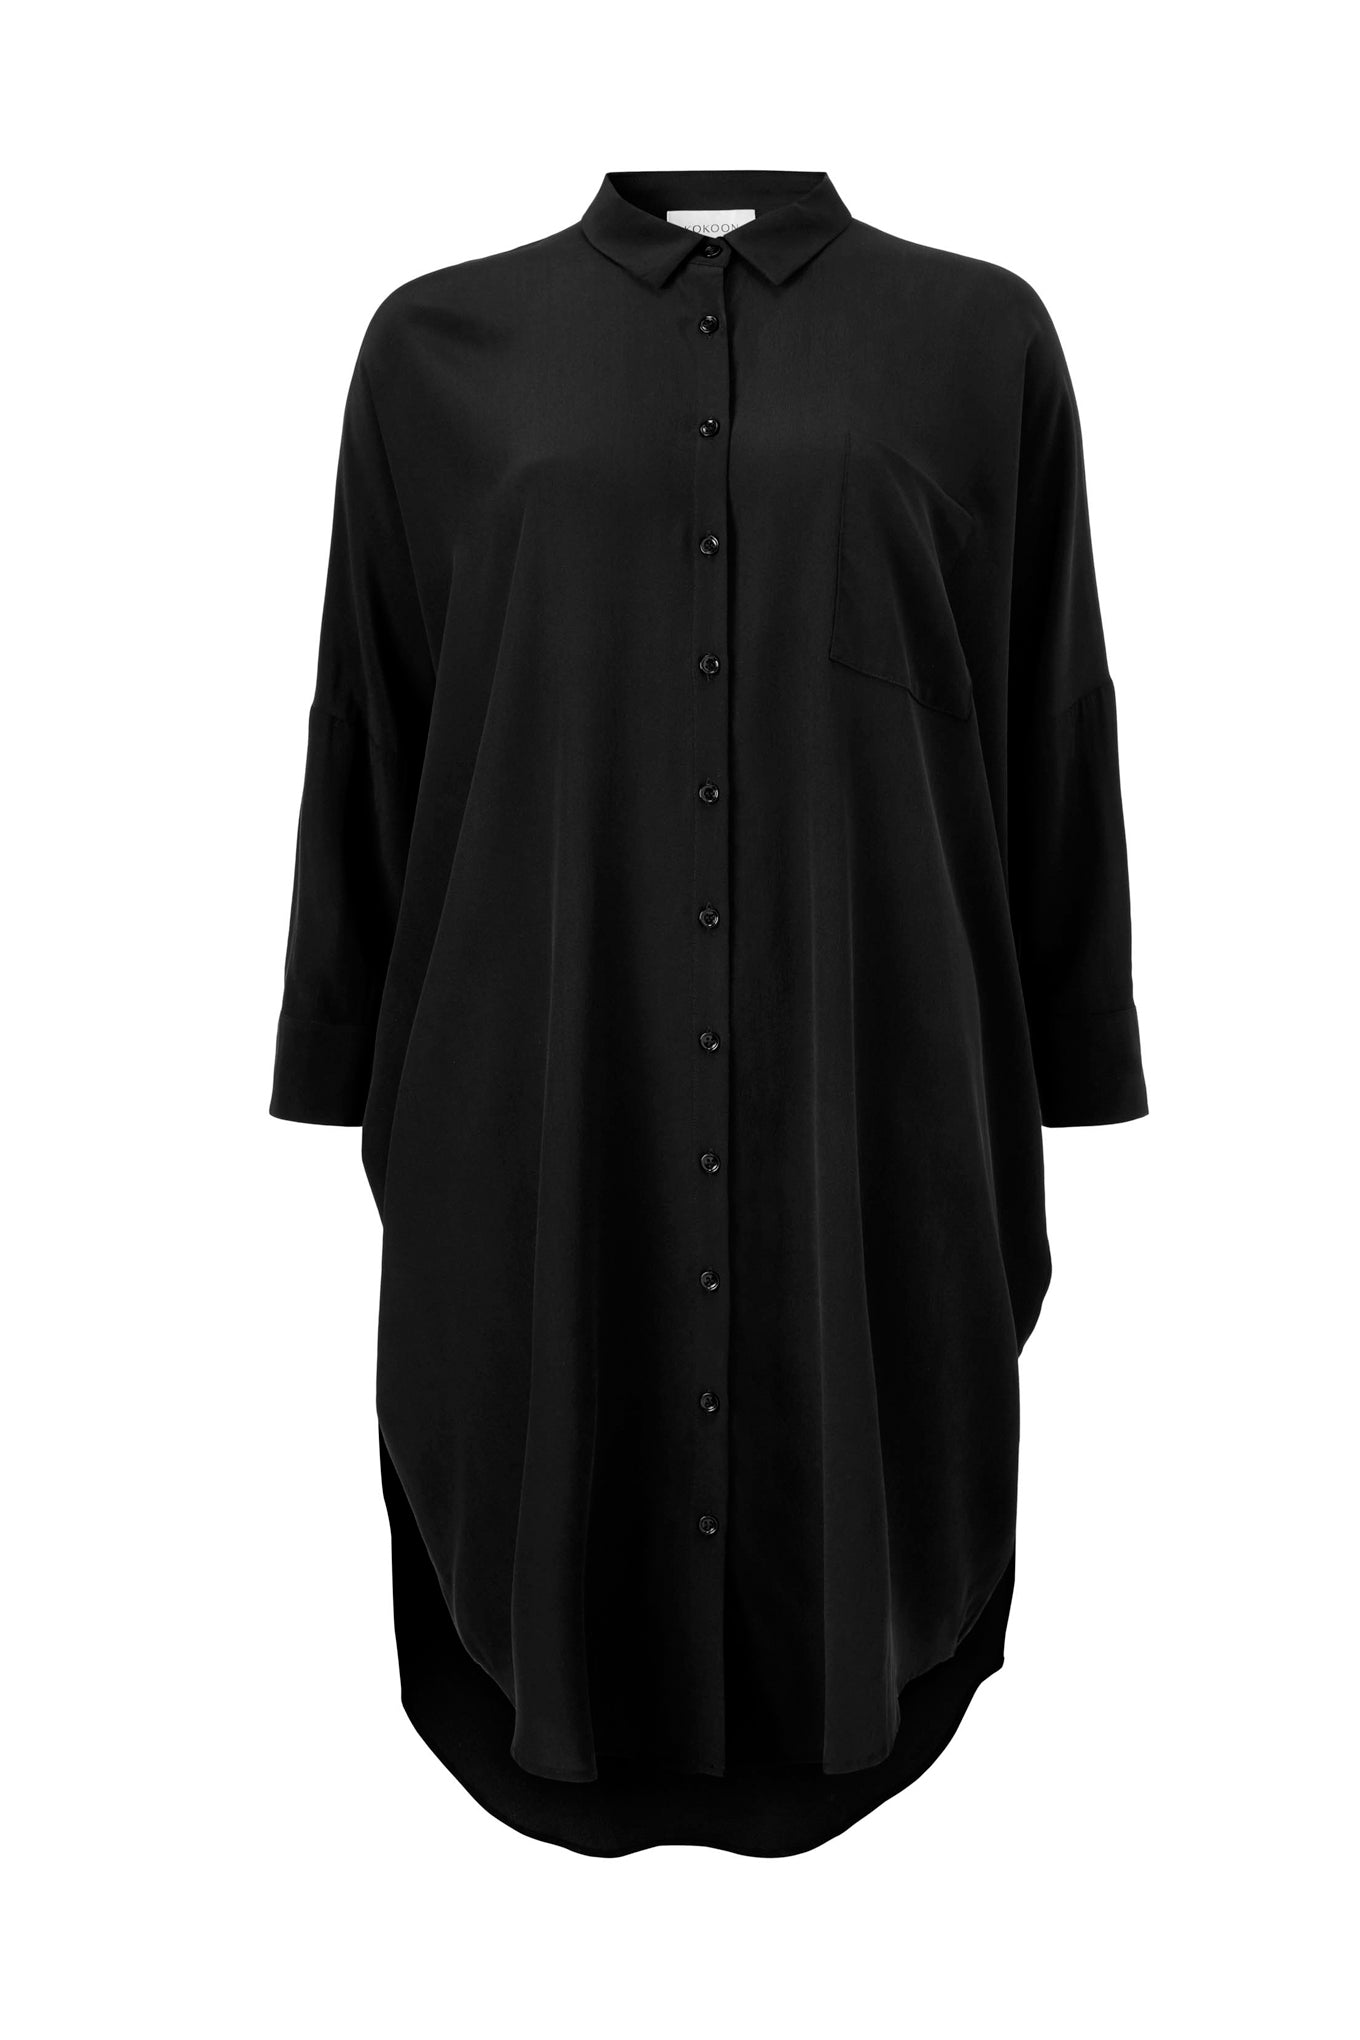 OVERSIZE SHIRT DRESS - BLACK - SAND WASHED CREPE DE CHINE